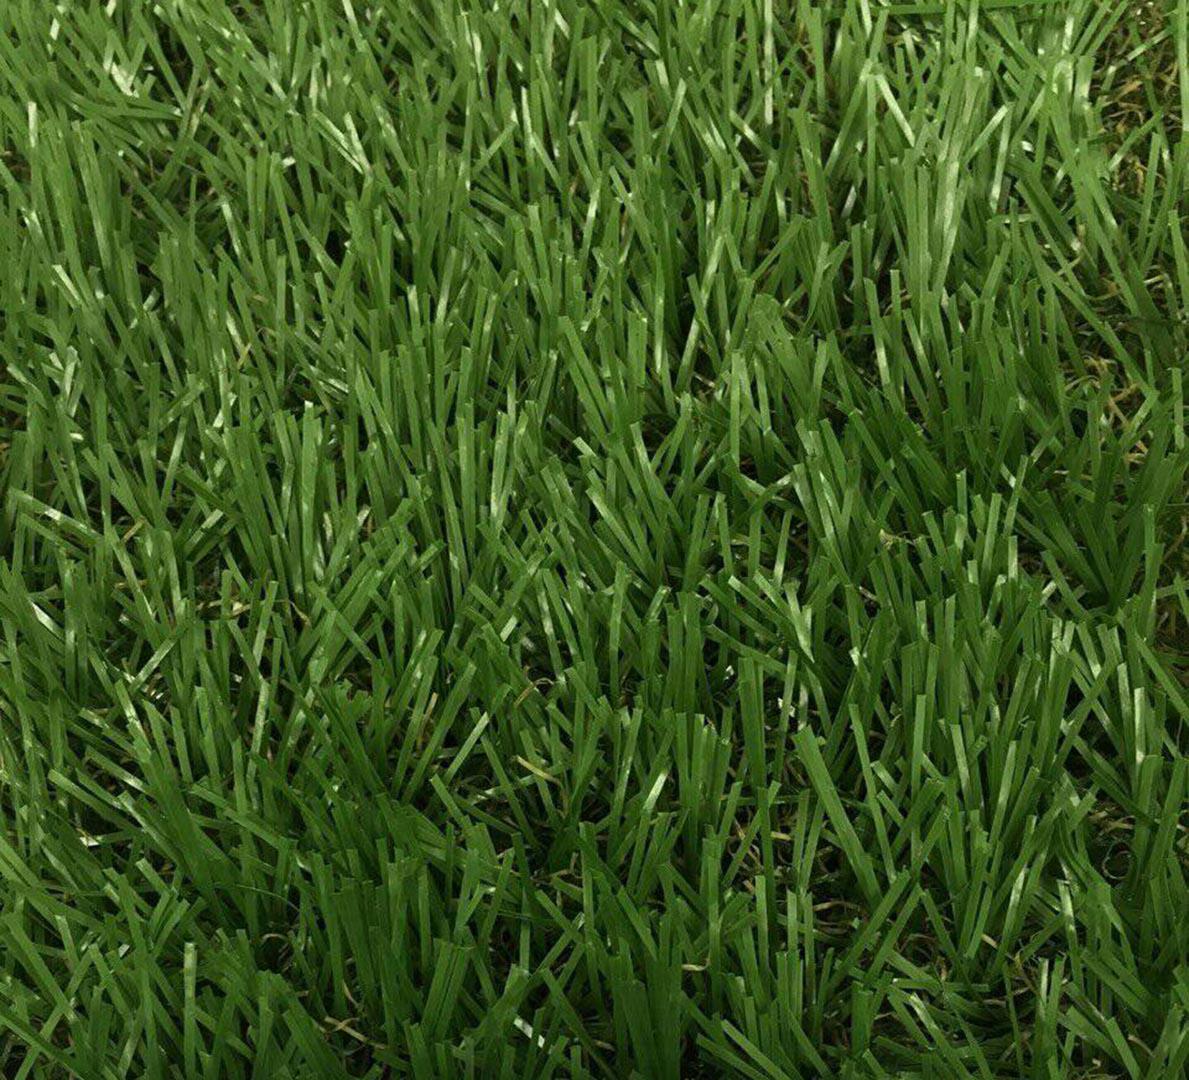 หญ้าเทียม อีซี่กราส เอสซีจี เซฟวิ่งกราส รุ่นสั่งตัด ความยาวเส้นหญ้า 4 ซม. สี กรีน